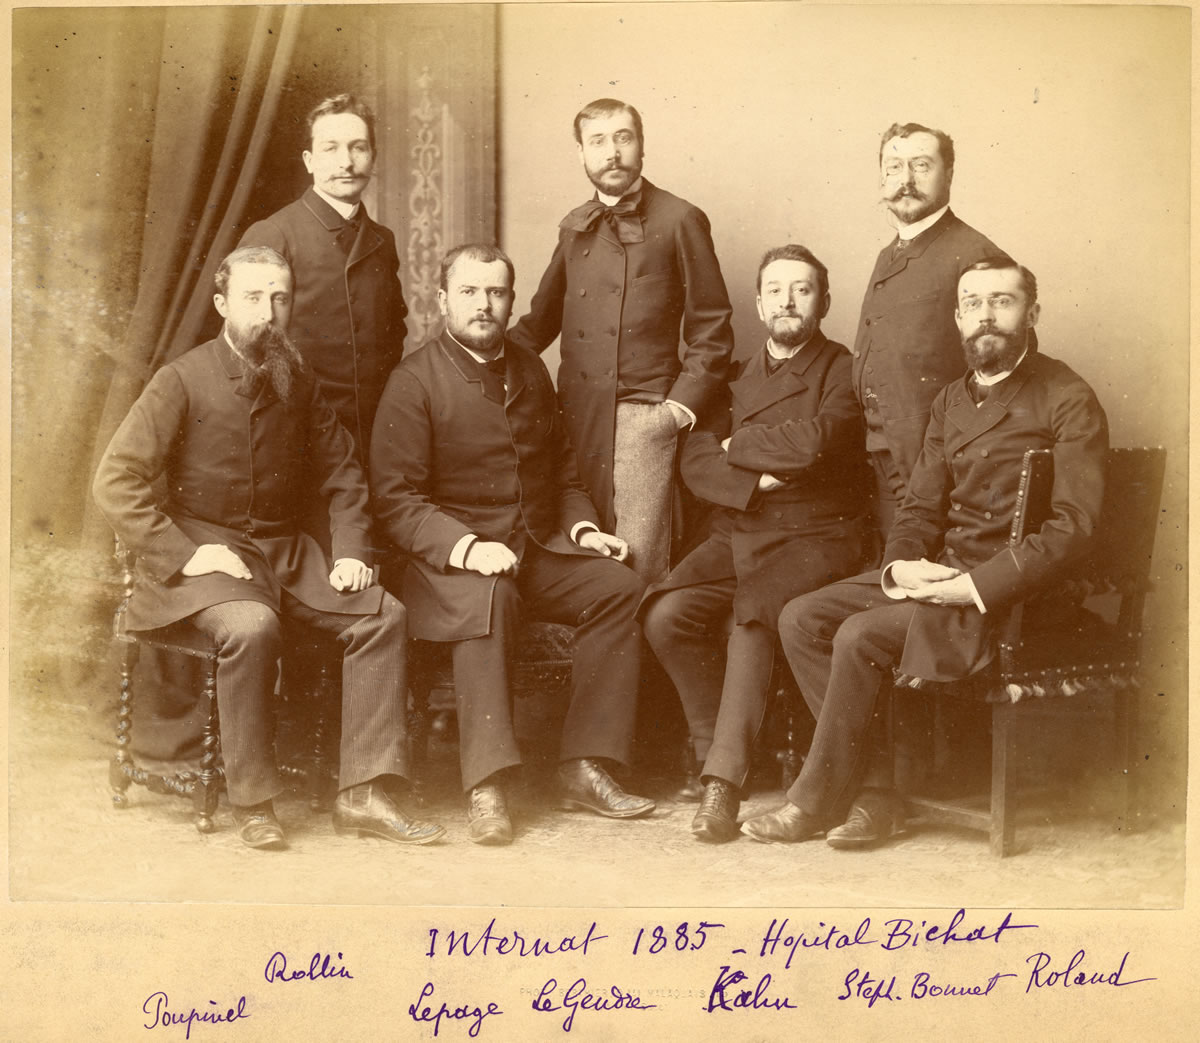 Hopita Bichat 1885 Les Internes